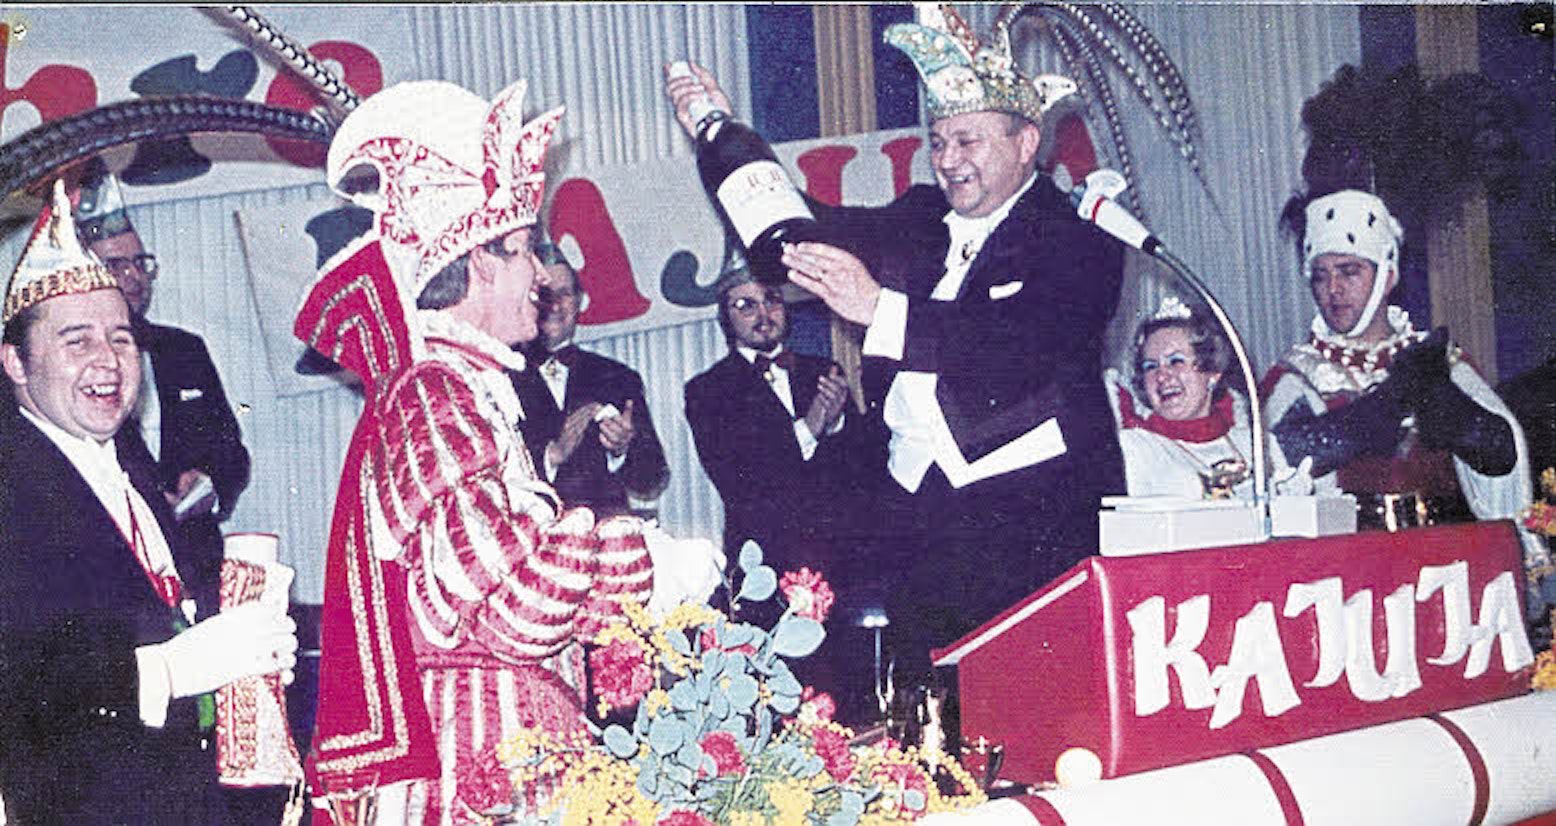 Das Dreigestirn kommt 1972 aus der Kajuja: Prinz Heinz-Lothar Volberg mit Kajuja-Präsident Willi Heider im Jahr 1972.